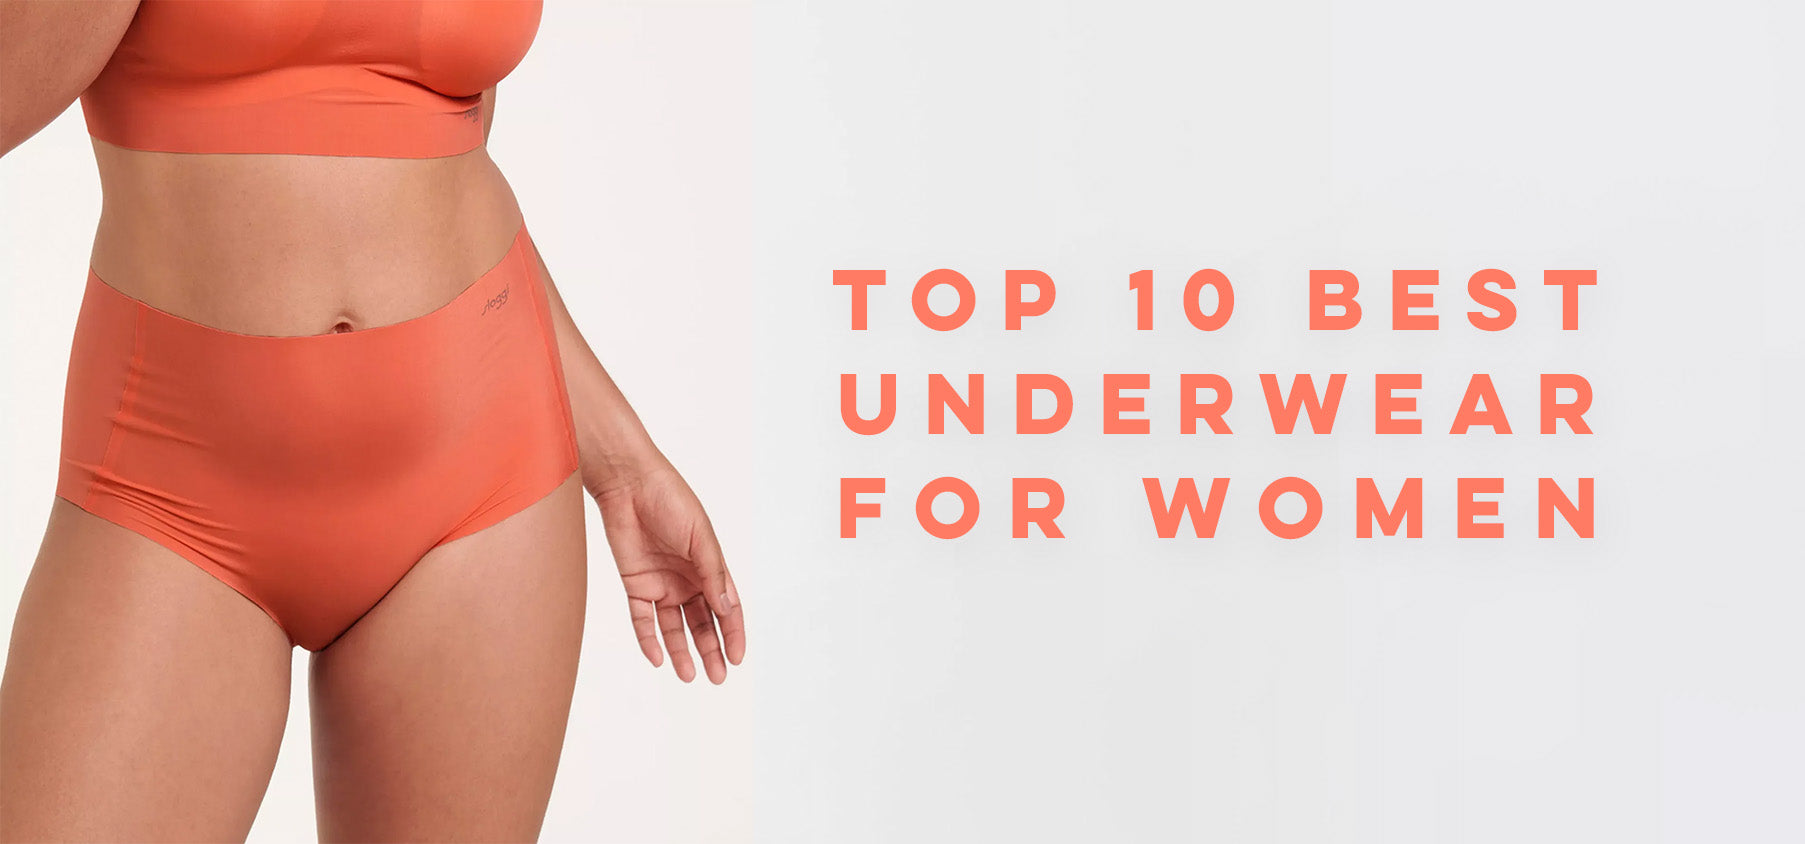  Girls Underwear 100% Cotton Underwear For Girls